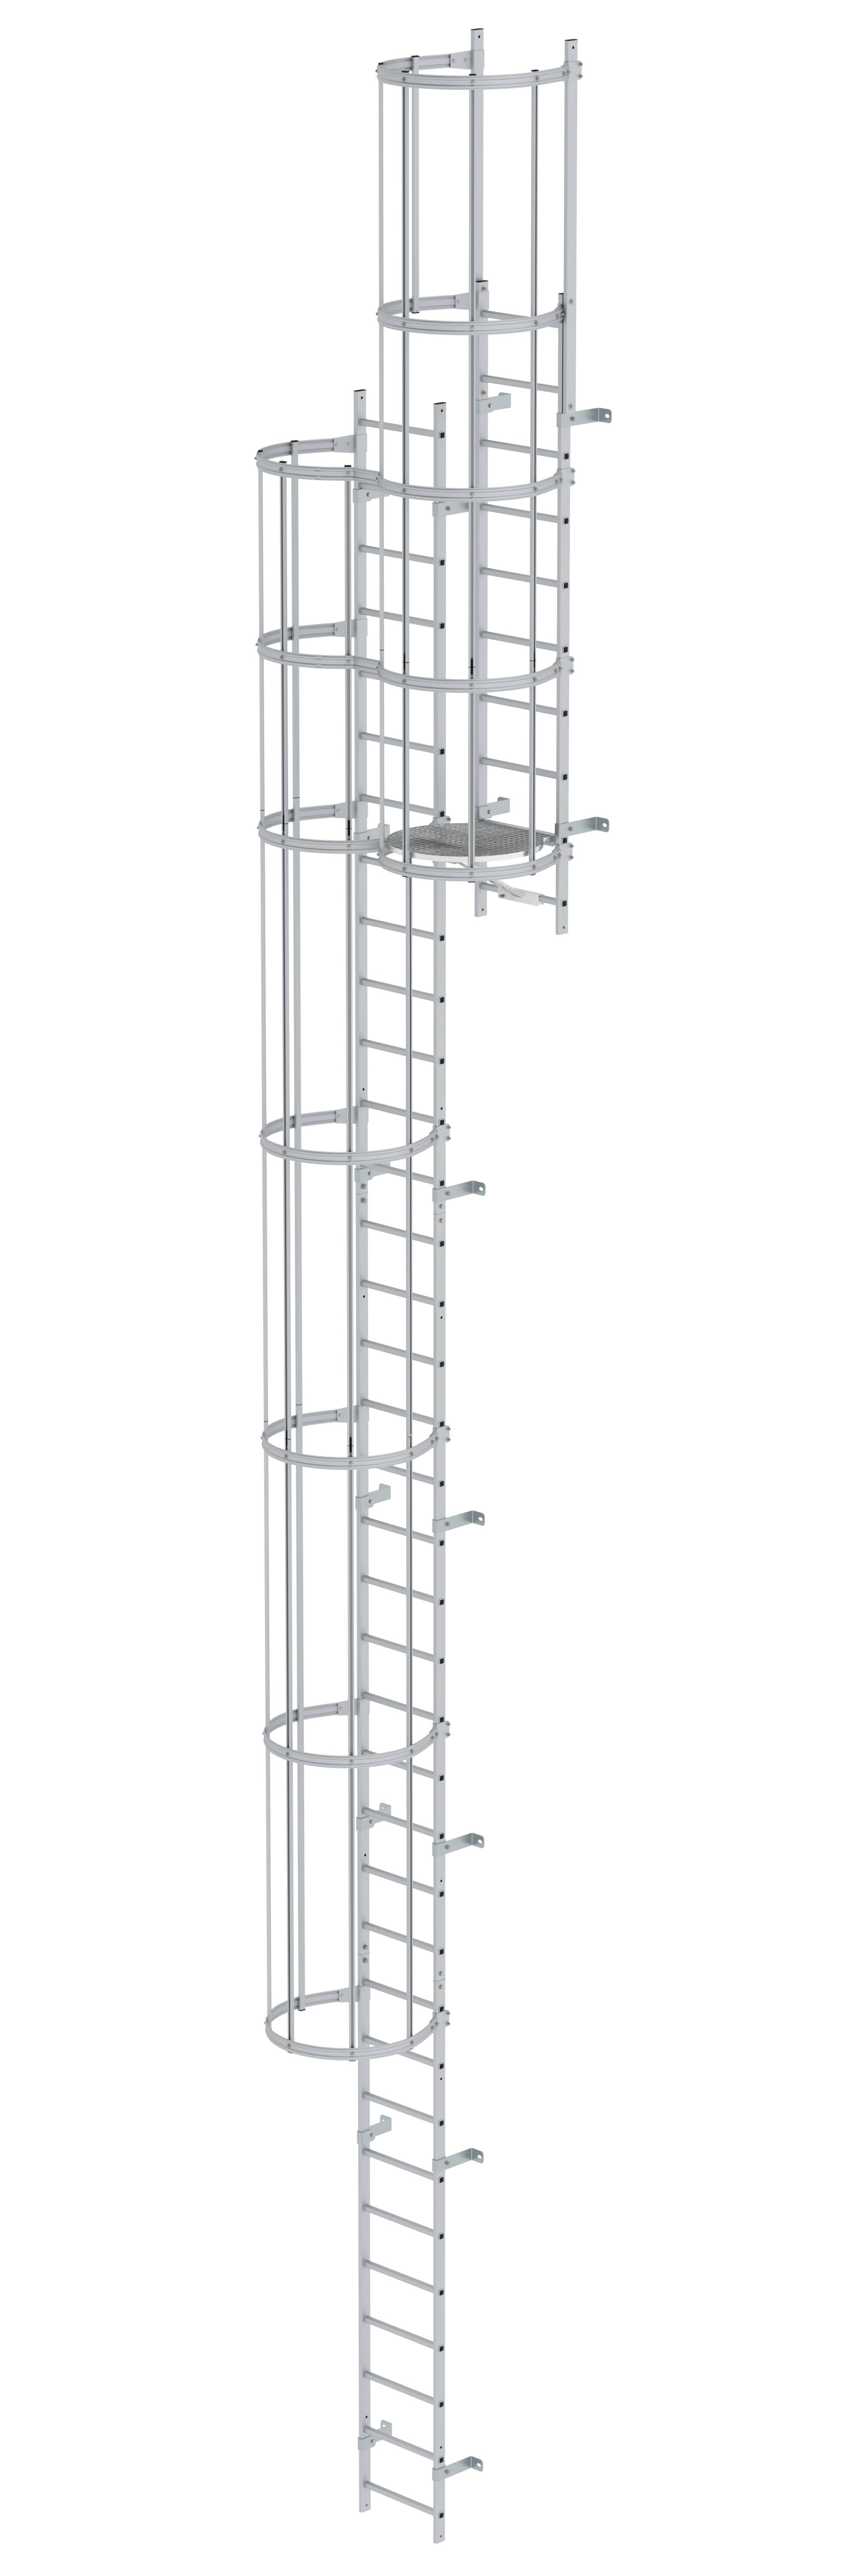 Mehrzügige Steigleiter mit Rückenschutz (Bau) Aluminium eloxiert 11,84m